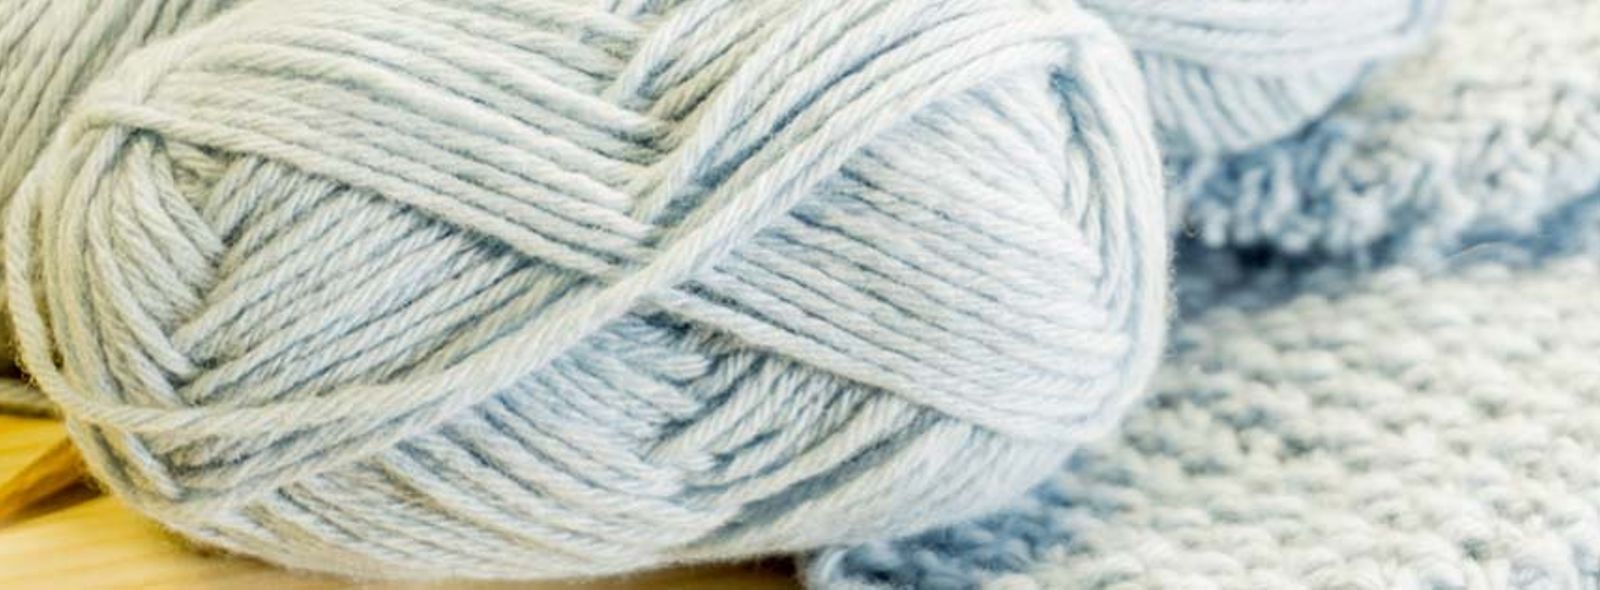 Arm Knitting: lavorare la lana con le mani